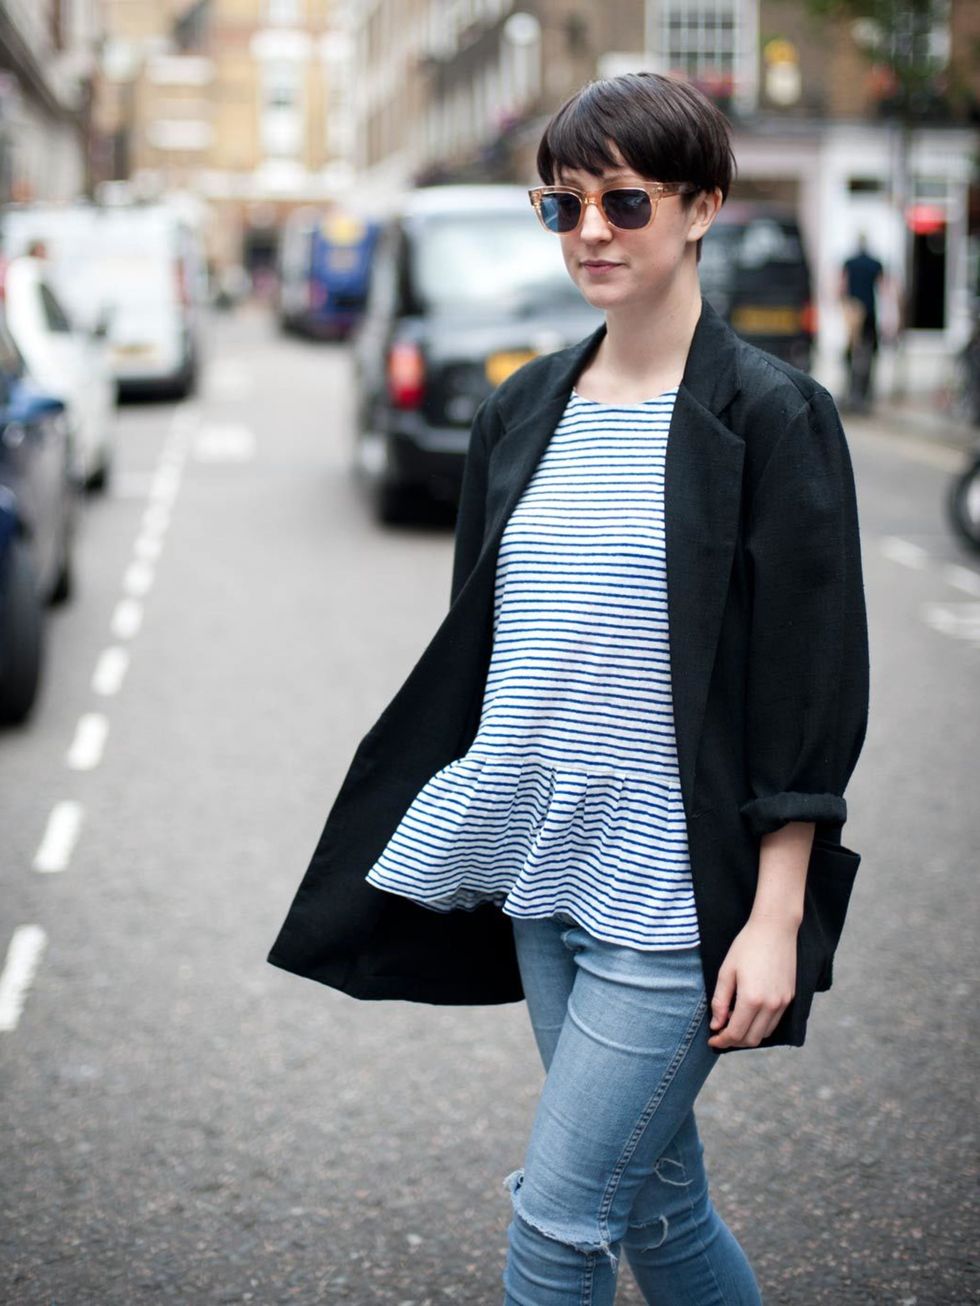 <p><strong>Alice Watt - ELLEuk.com Fashion Assistant</strong>Vintage blazer, <a href="http://www.zara.com/webapp/wcs/stores/servlet/home/uk/en">Zara</a> peplum T-shirt, Wrangler jeans, Cutler &amp; Gross sunglasses</p>